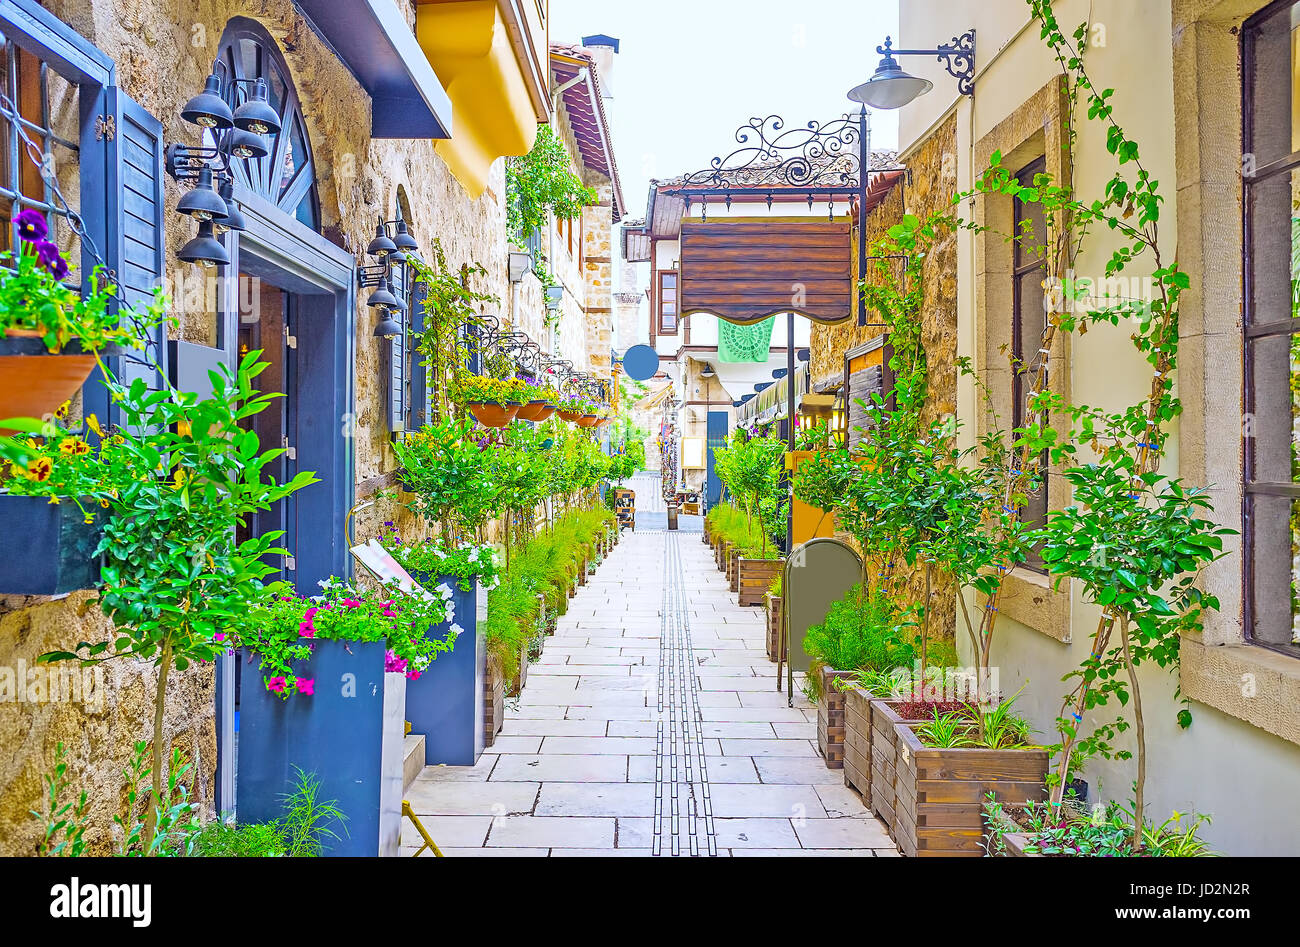 Kaleici - die Altstadt von Antalya ist reich verziert mit Bäumen, Pflanzen und Blumen in kleine Töpfe und große Badewannen, Türkei. Stockfoto